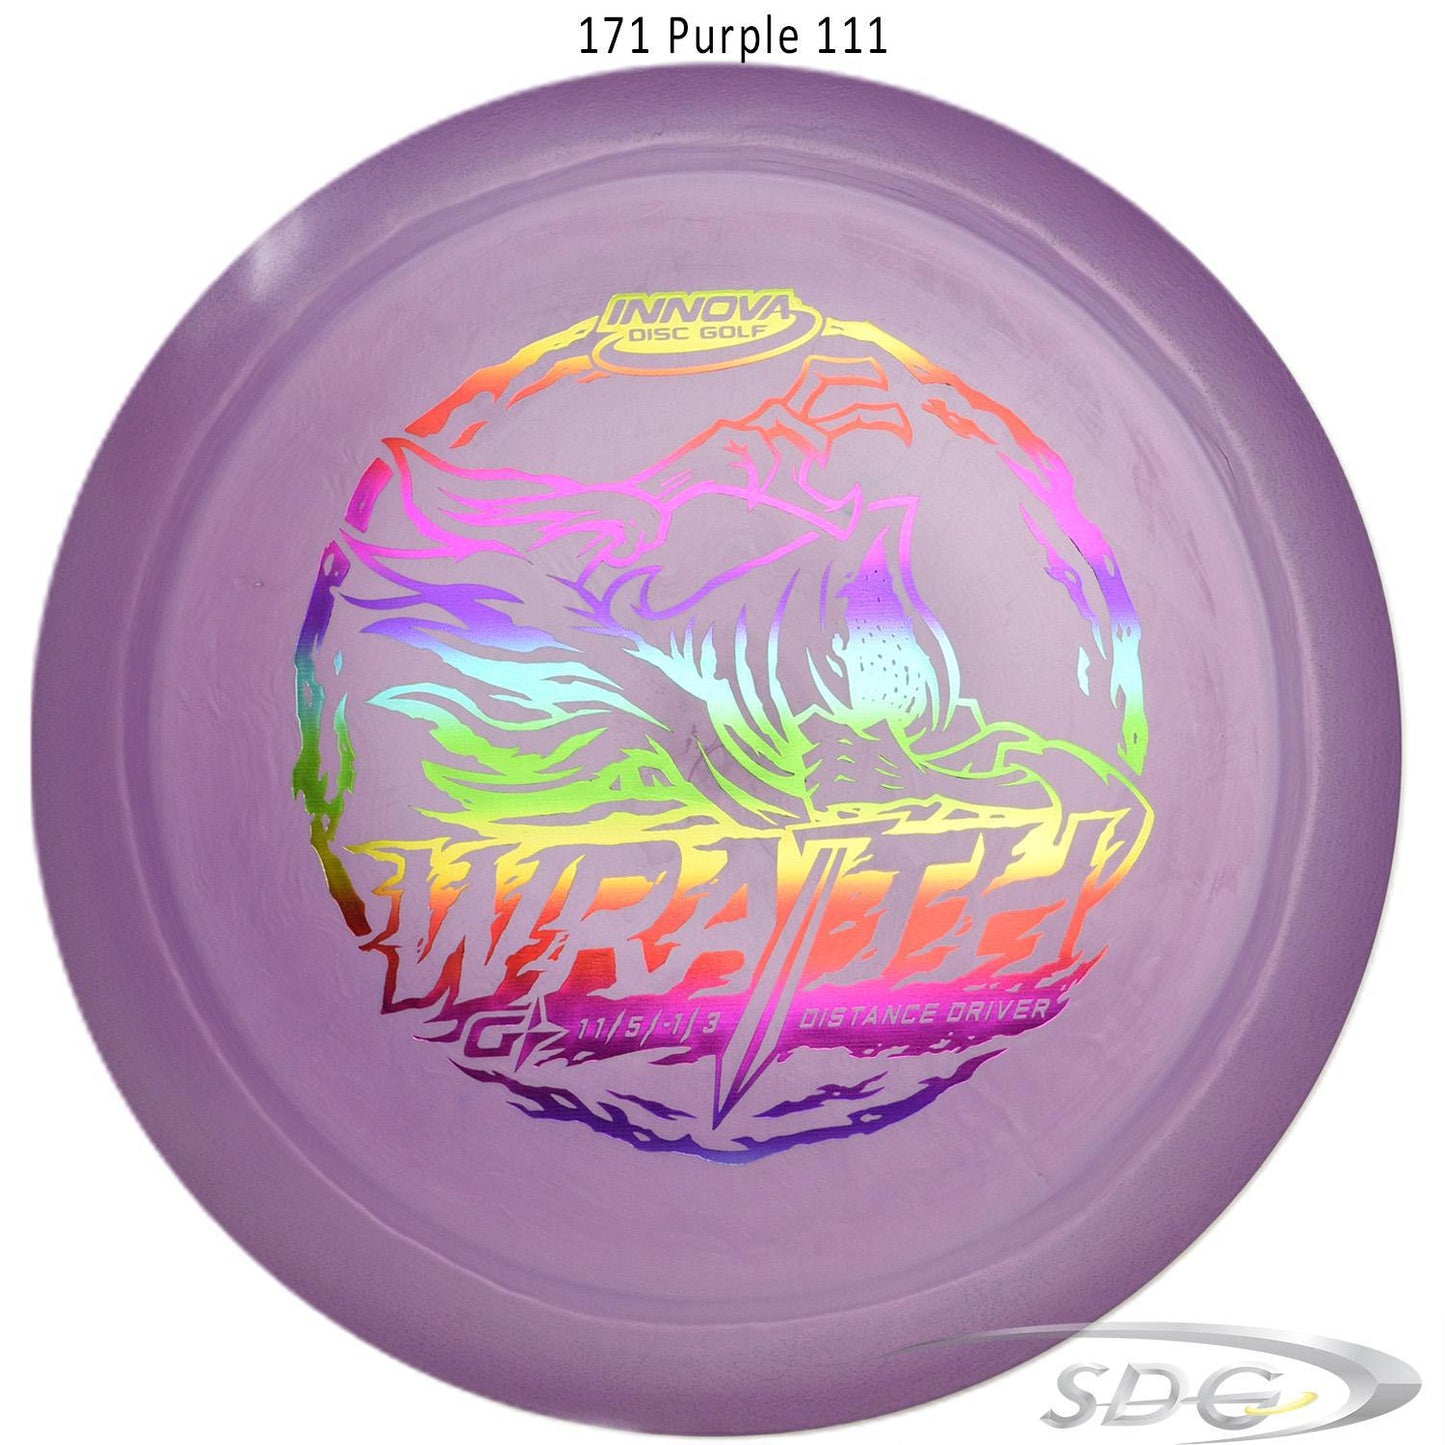 innova-gstar-wraith-disc-golf-distance-driver 171 Purple 111 